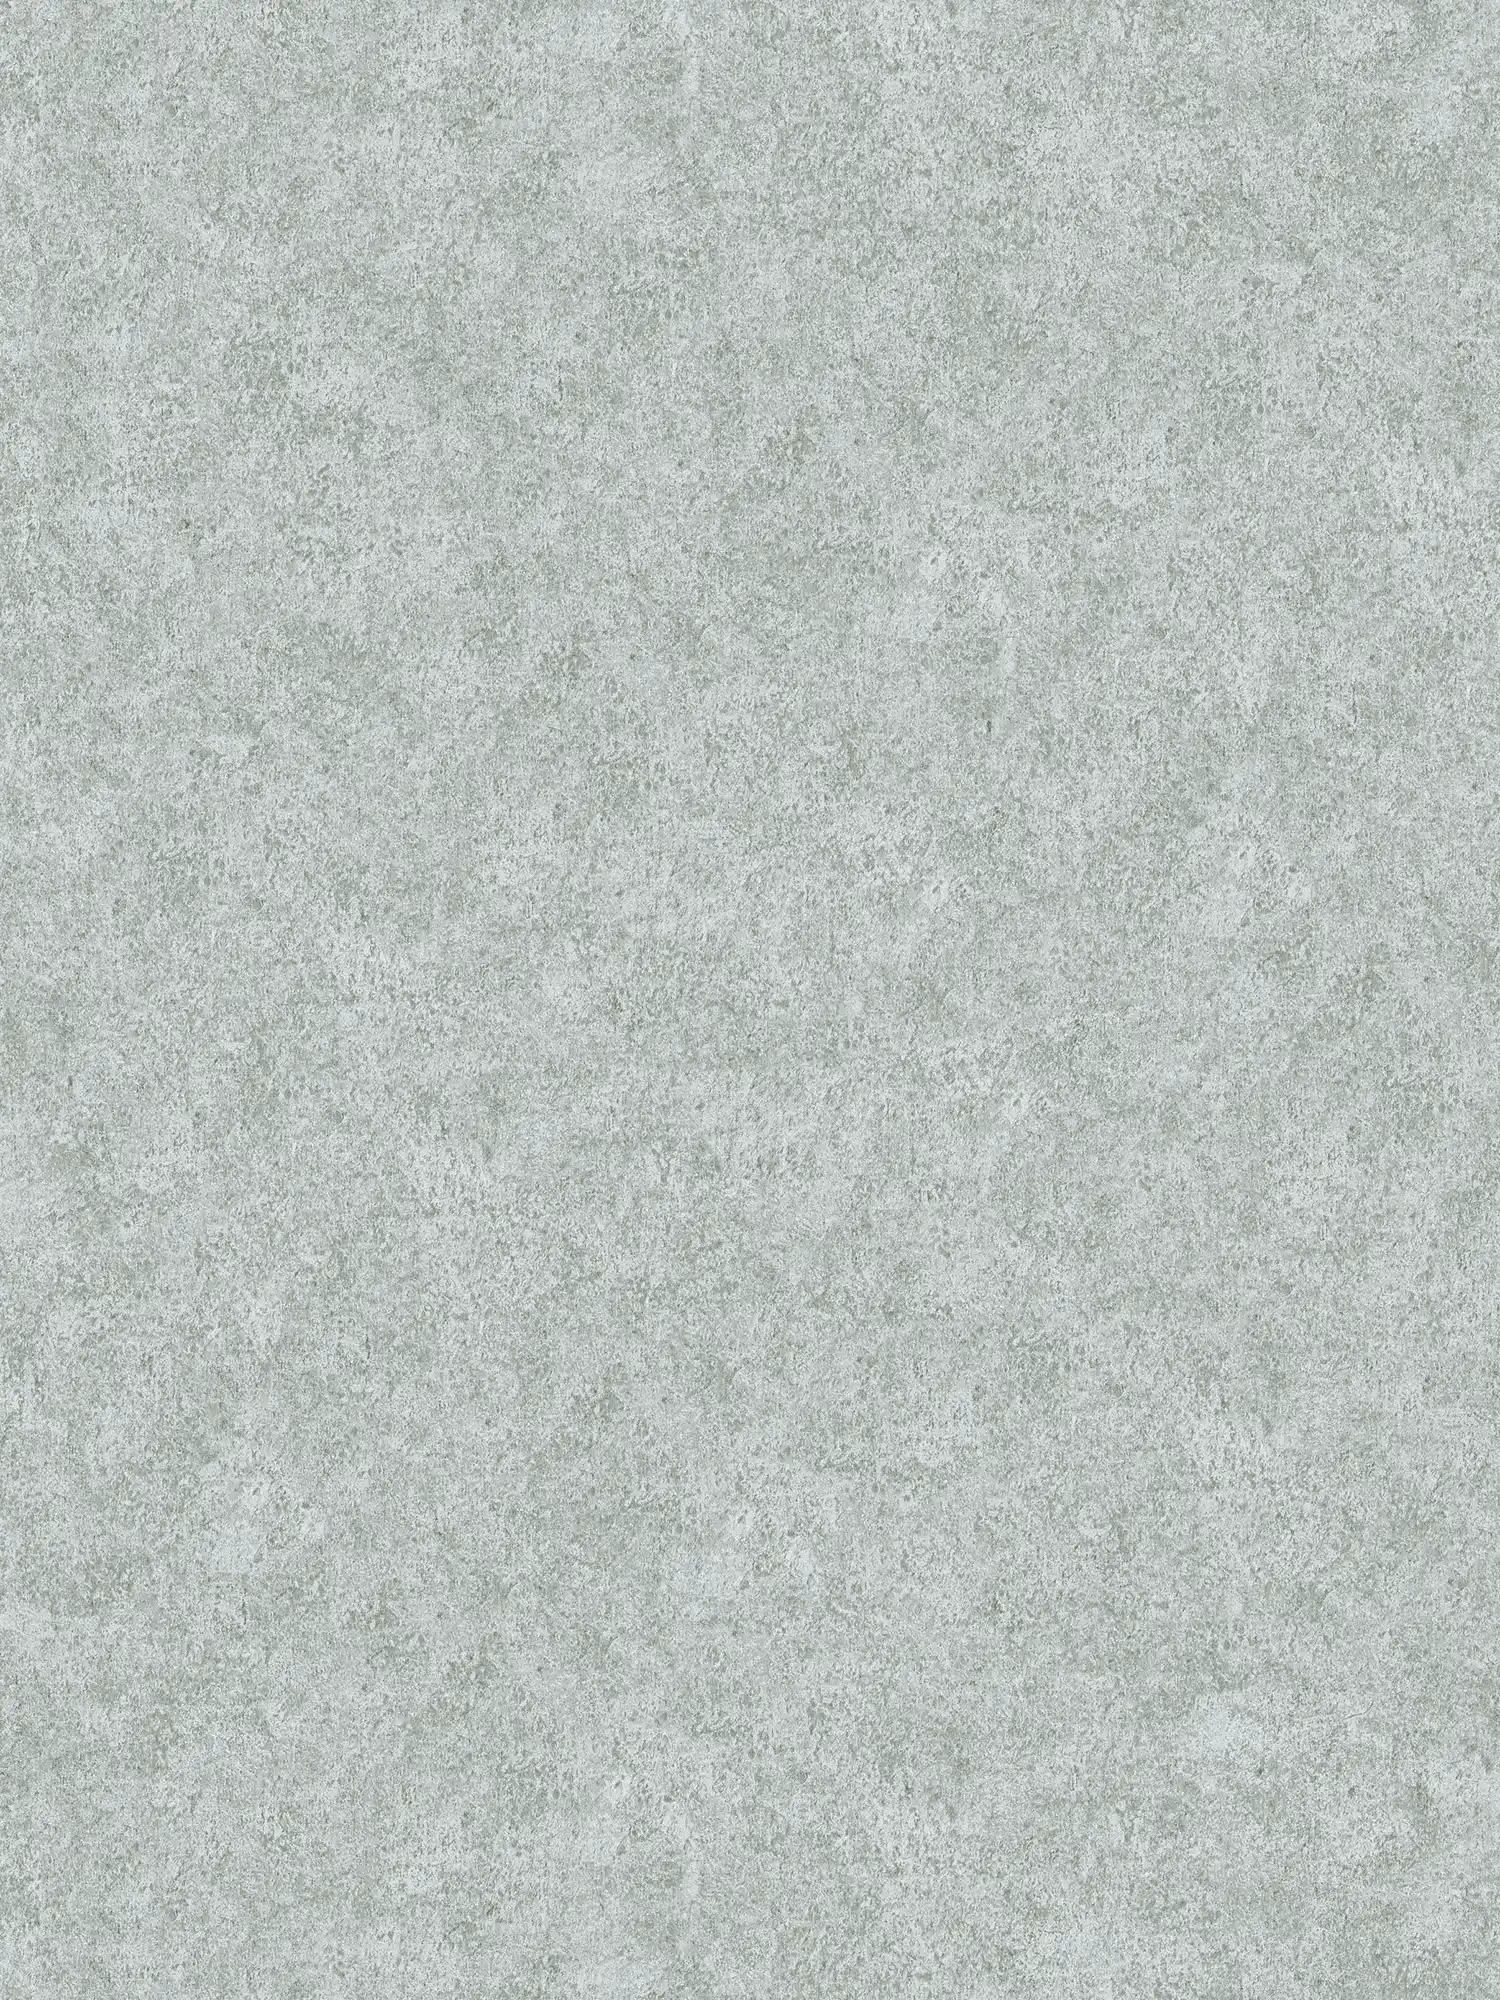 Papier peint uni gris avec aspect pierre naturelle chiné
